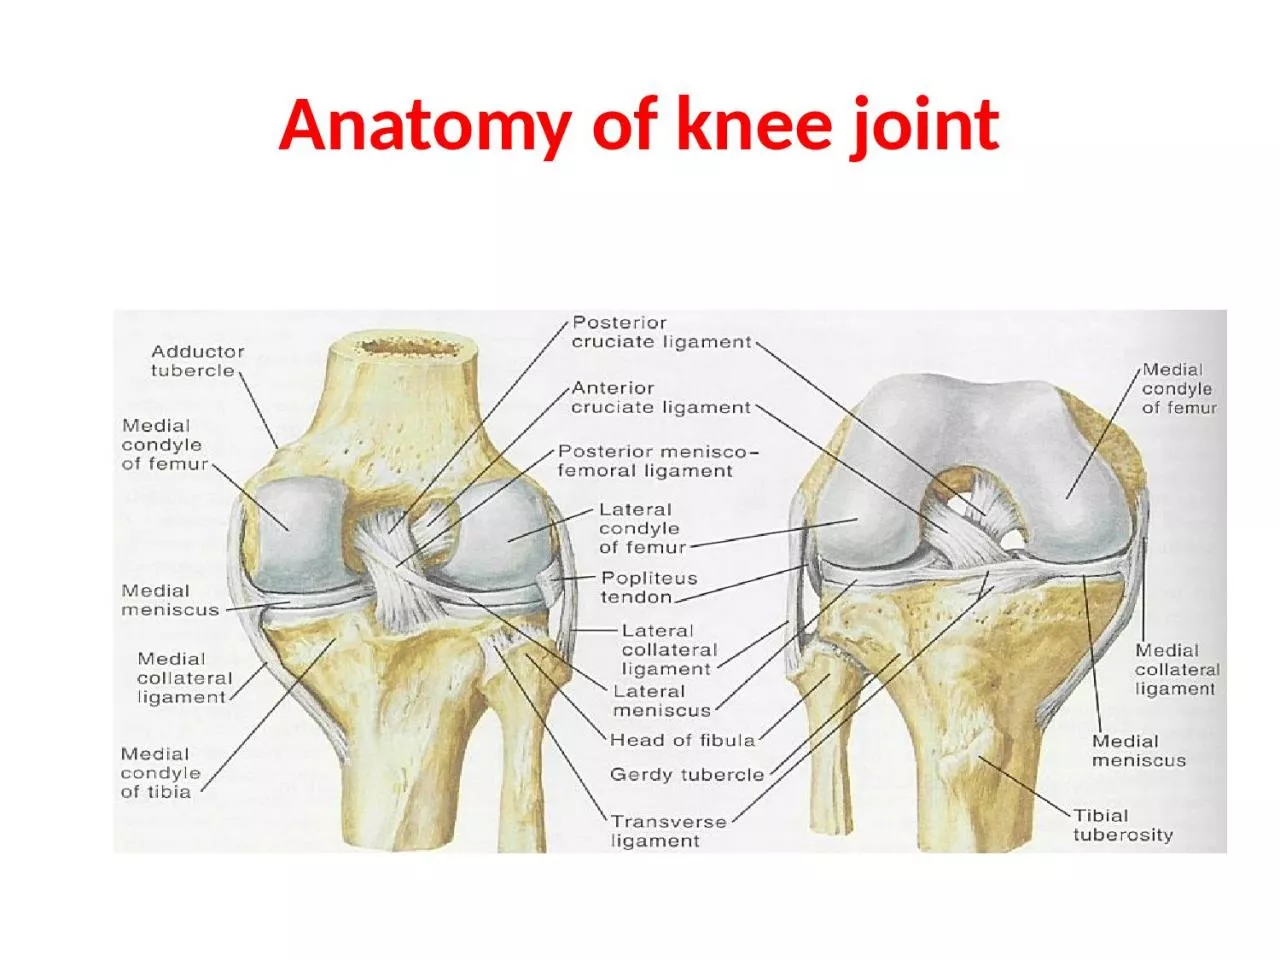 Anatomy of knee joint OSTEOARTHRITIS